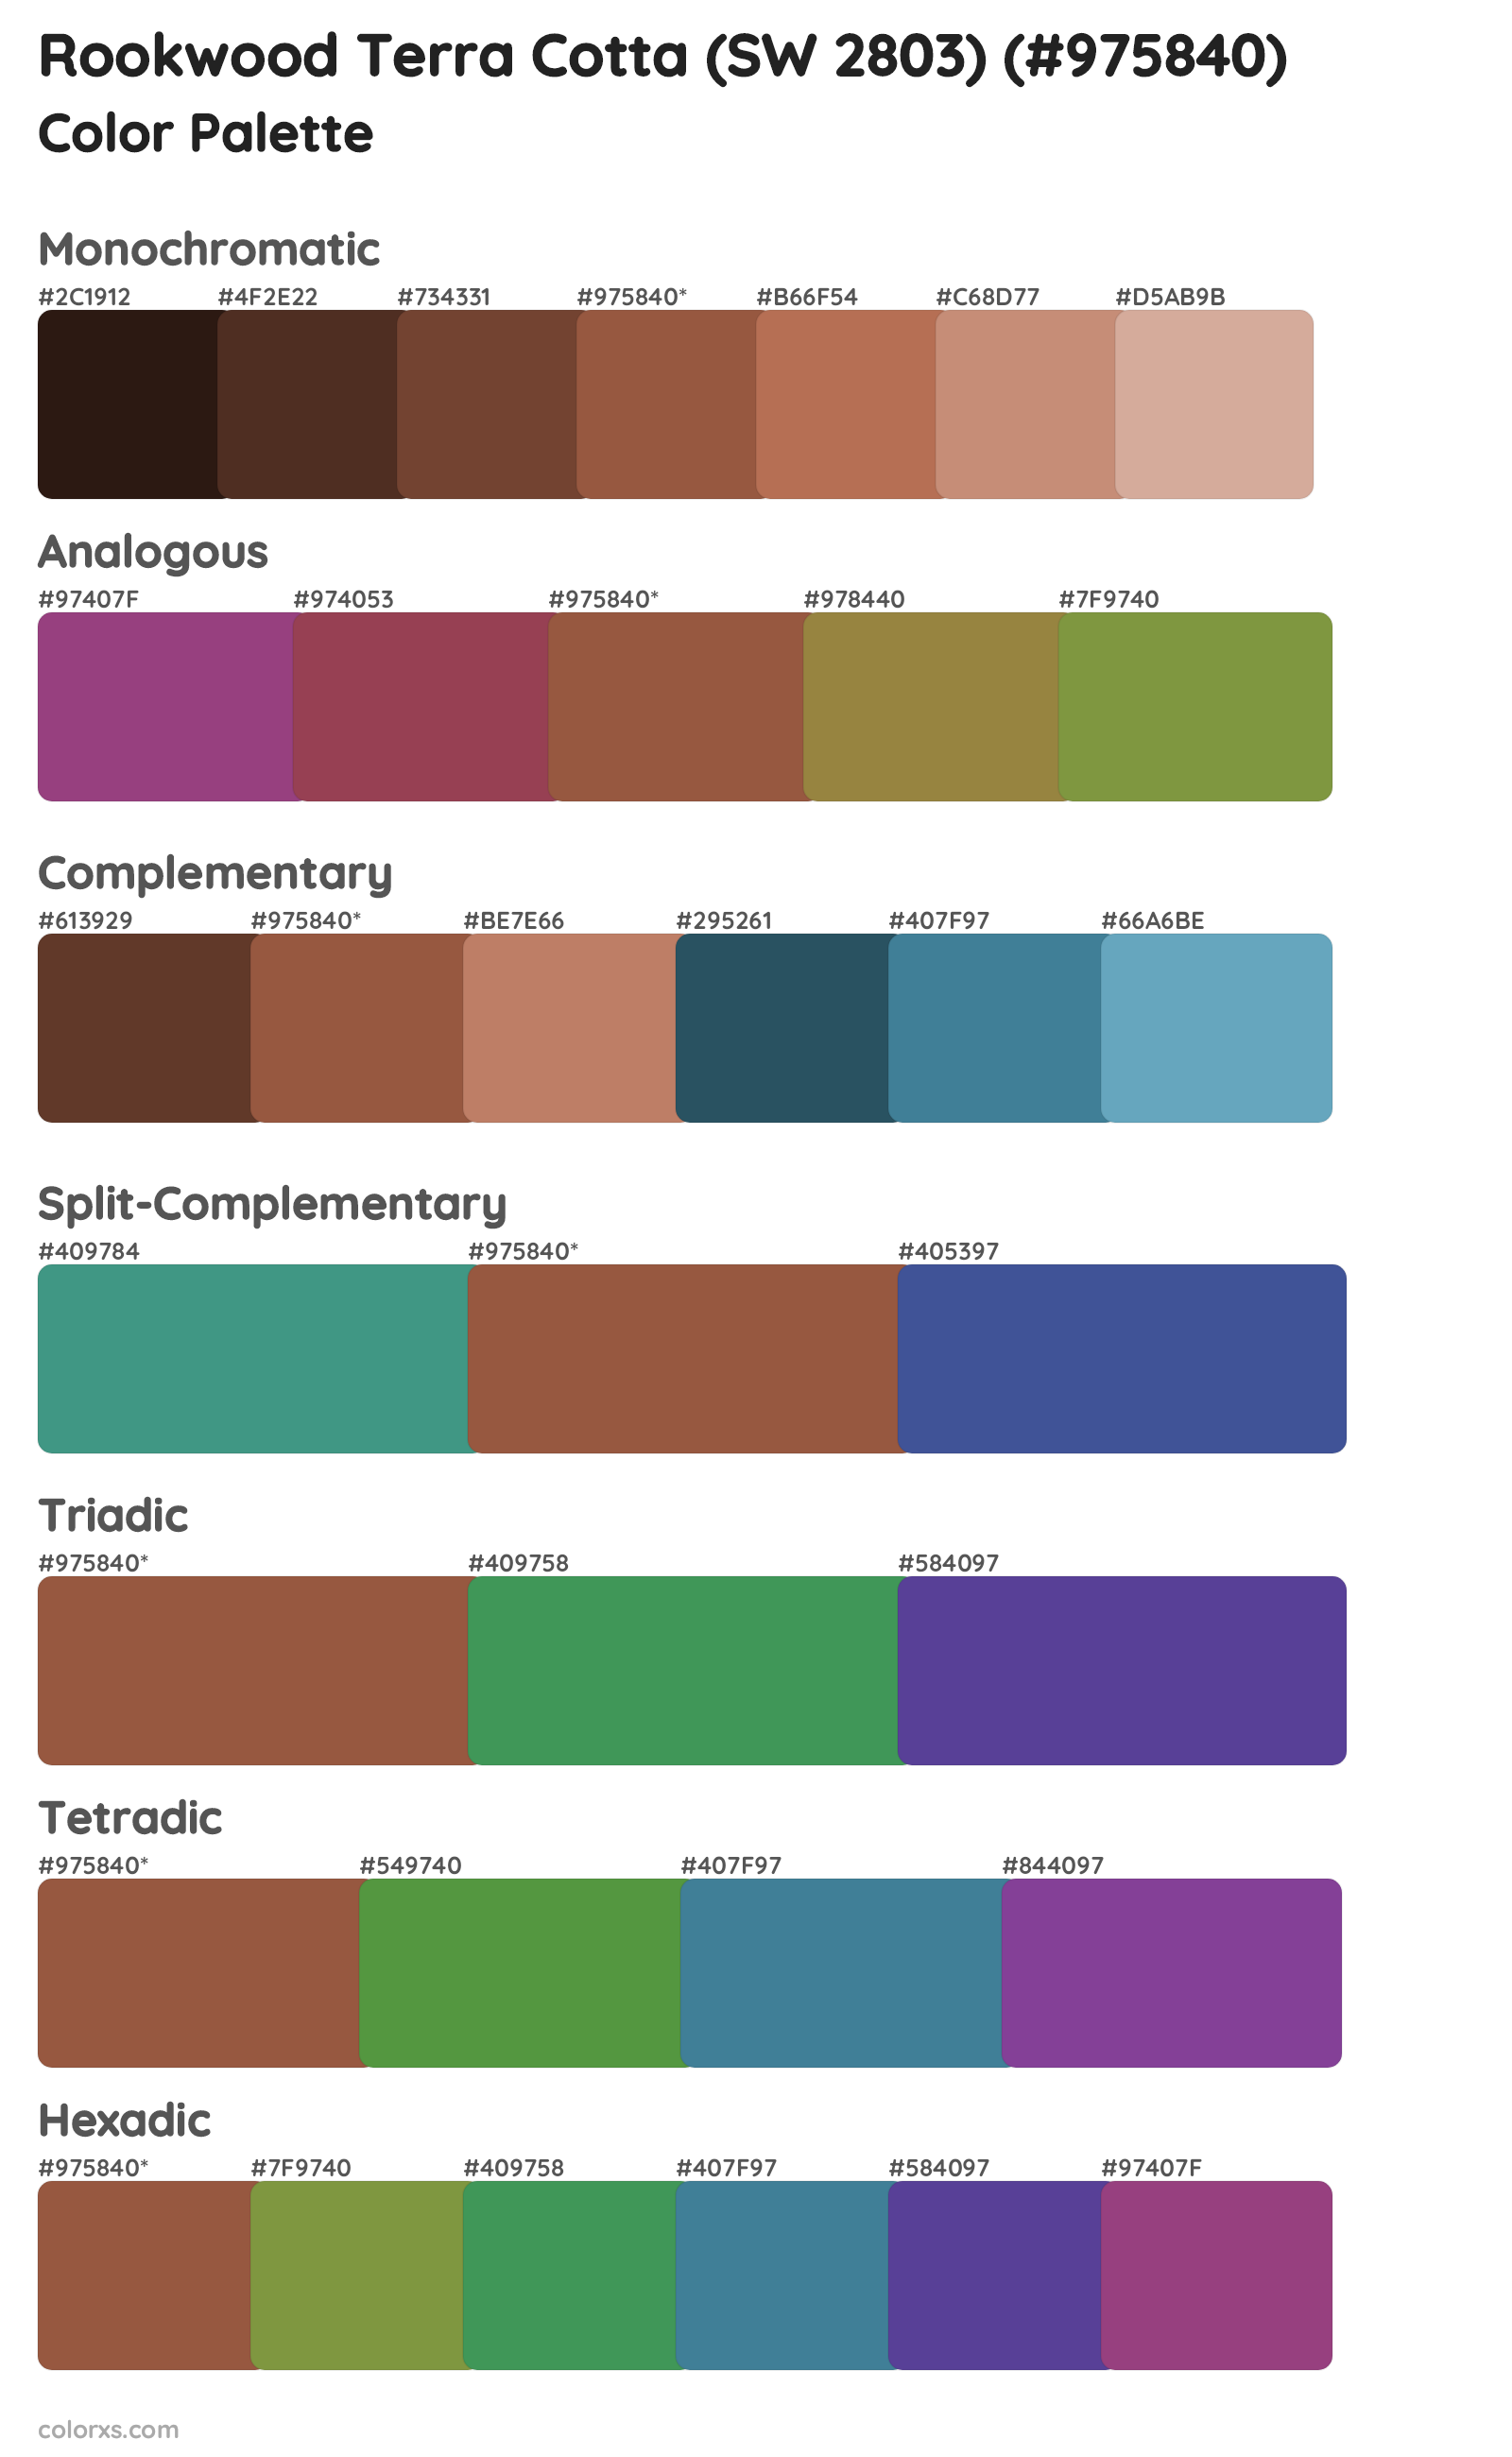 Rookwood Terra Cotta (SW 2803) Color Scheme Palettes